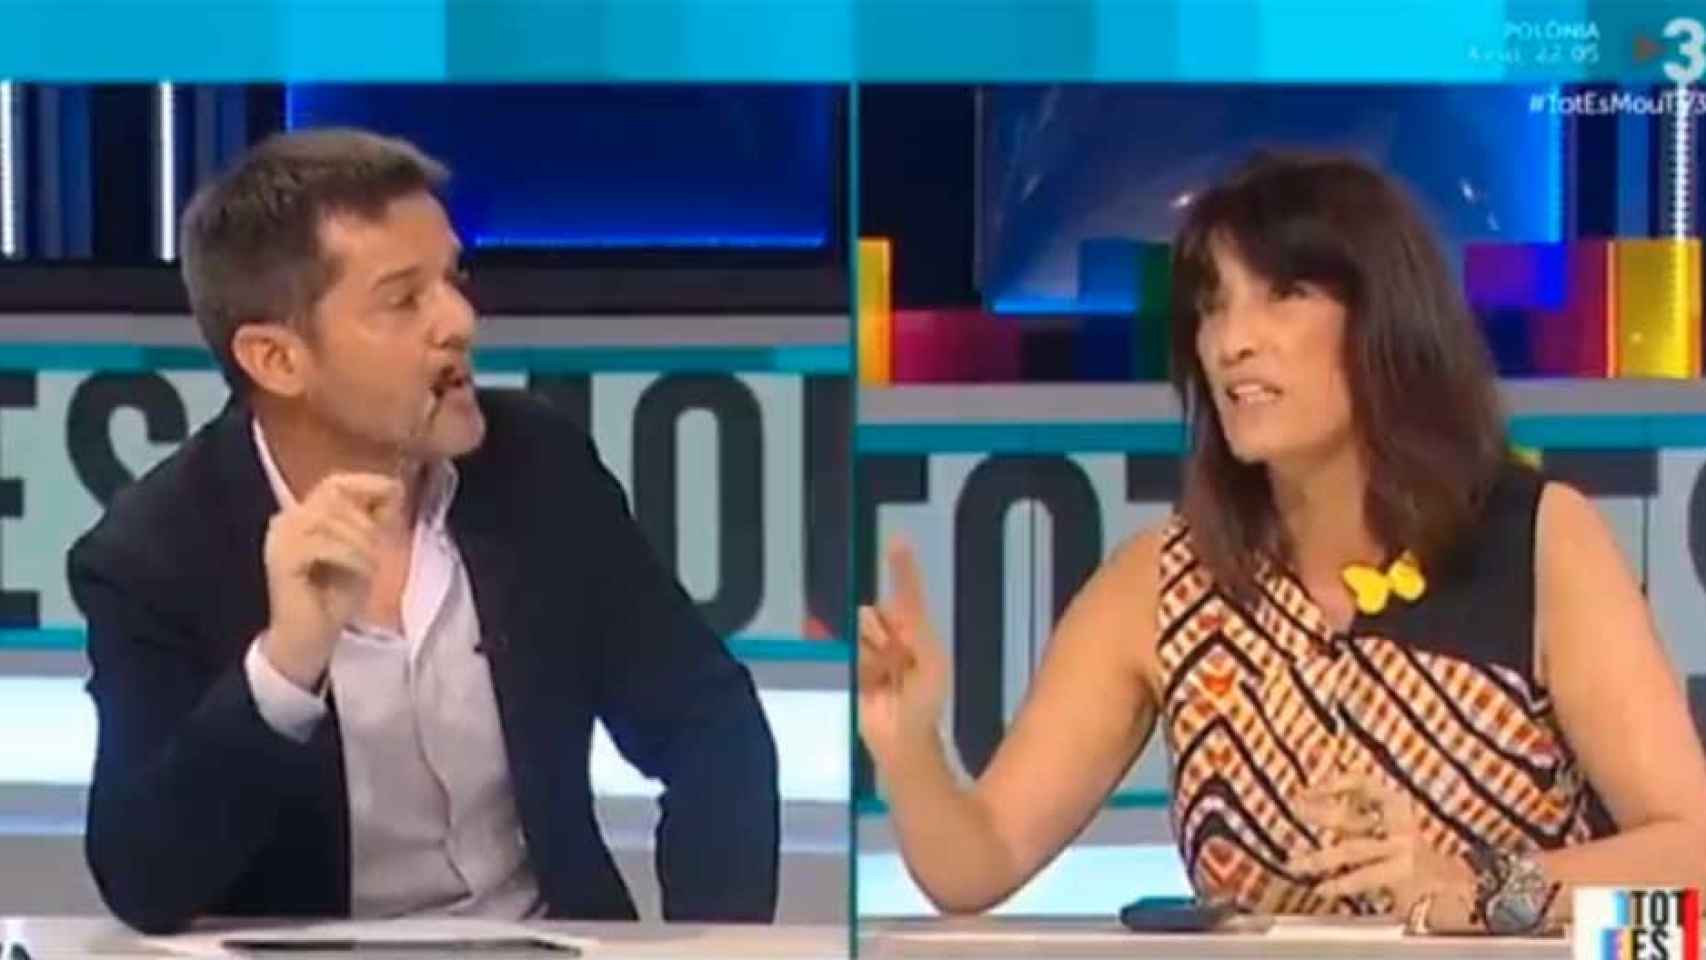 Sergi Sol (ERC) y Pilar Calvo (JxCat), discutiendo en el programa 'Tot es mou' de TV3